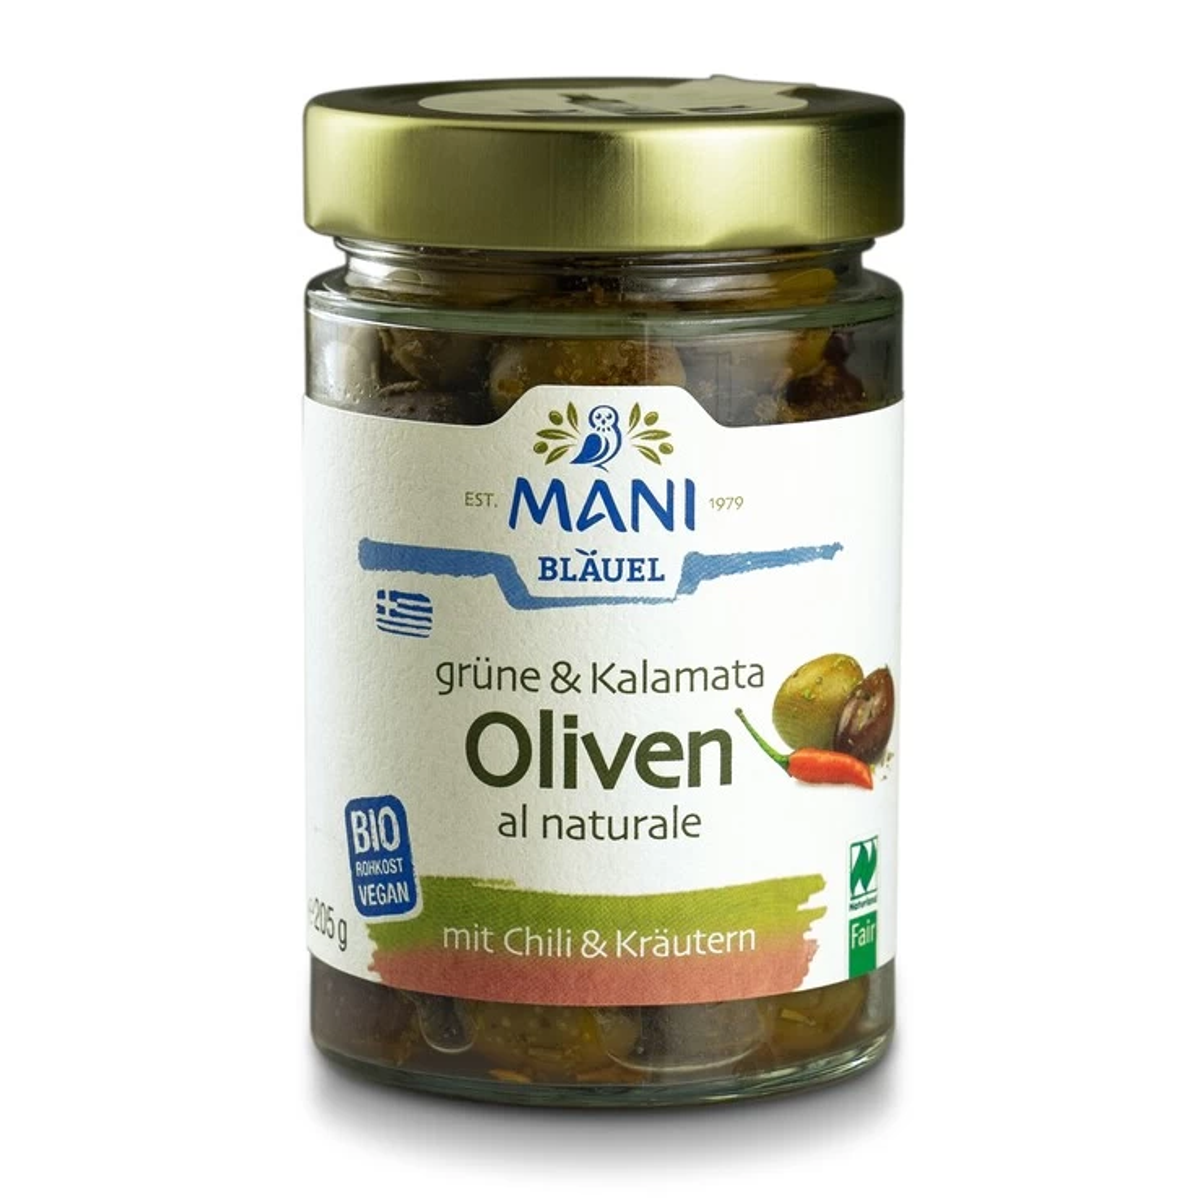 MANI Grüne & Kalamata Oliven mit Chili & Kräutern 205 g